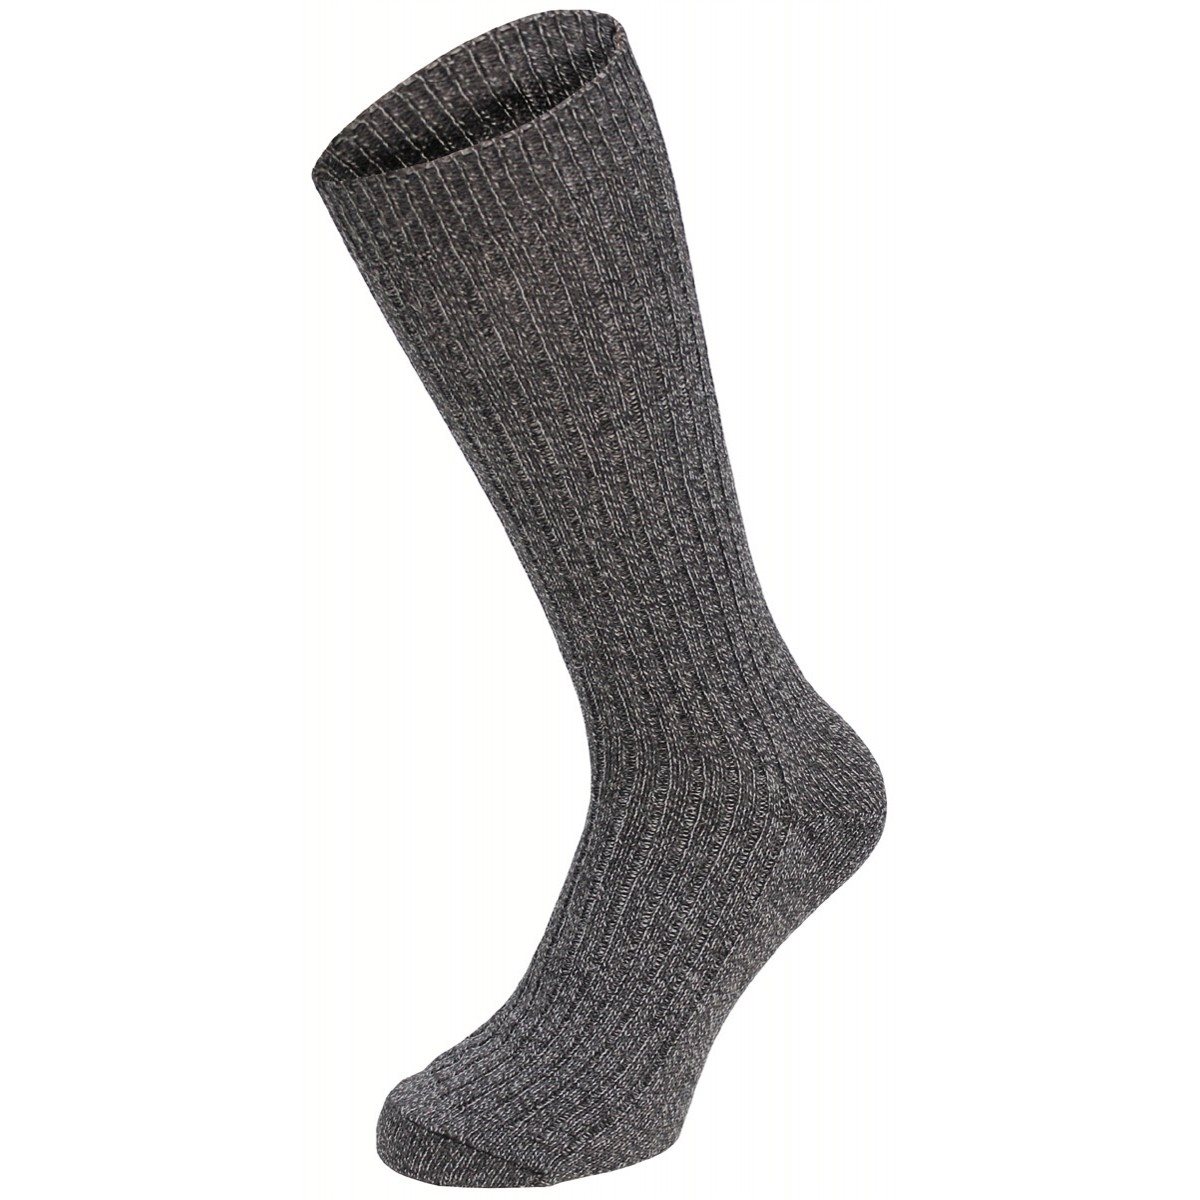 Ponožky styl BW s patou extra vysoké ŠEDÉ Velikost: 47-48